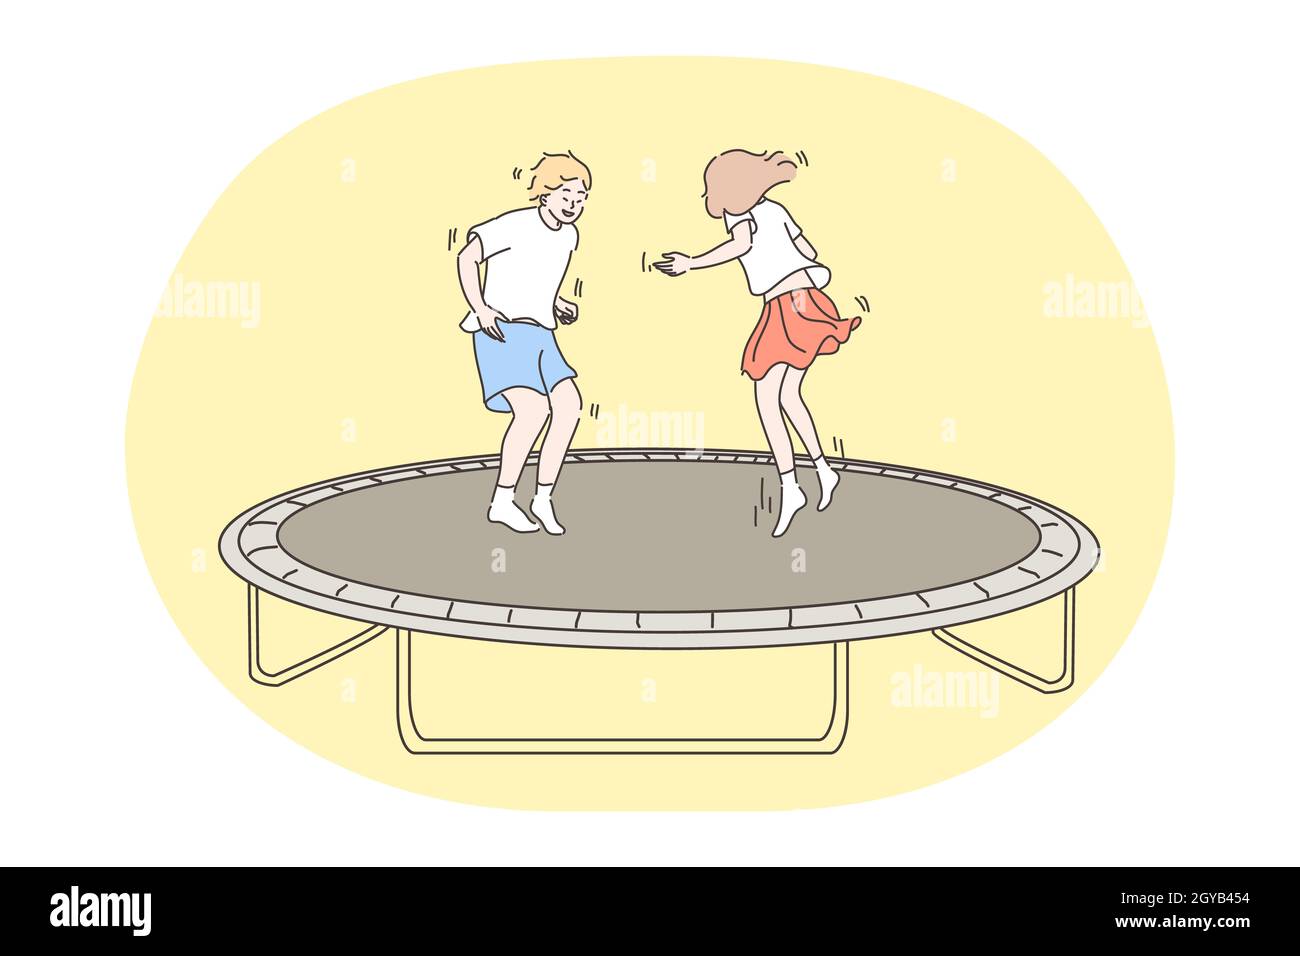 Enfants sautant, enfance, concept amusant. Joyeux garçon fille frère soeur enfants amis rebondissant sur trampoline sur l'aire de jeux ensemble. Le lei amusant de l'été Banque D'Images